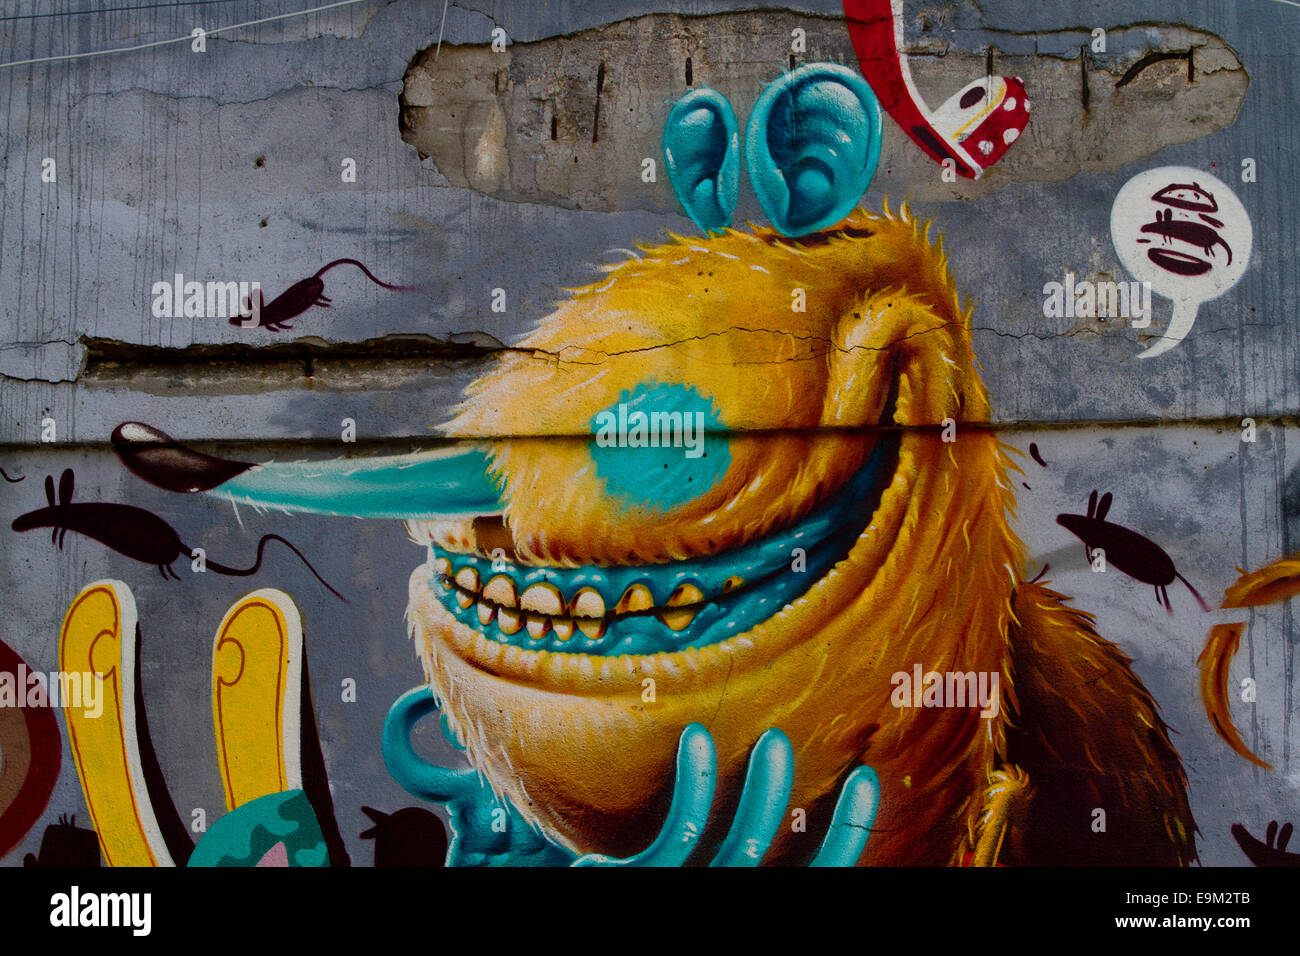 Graffiti street art Berlin Wall cartoon character Stock Photo